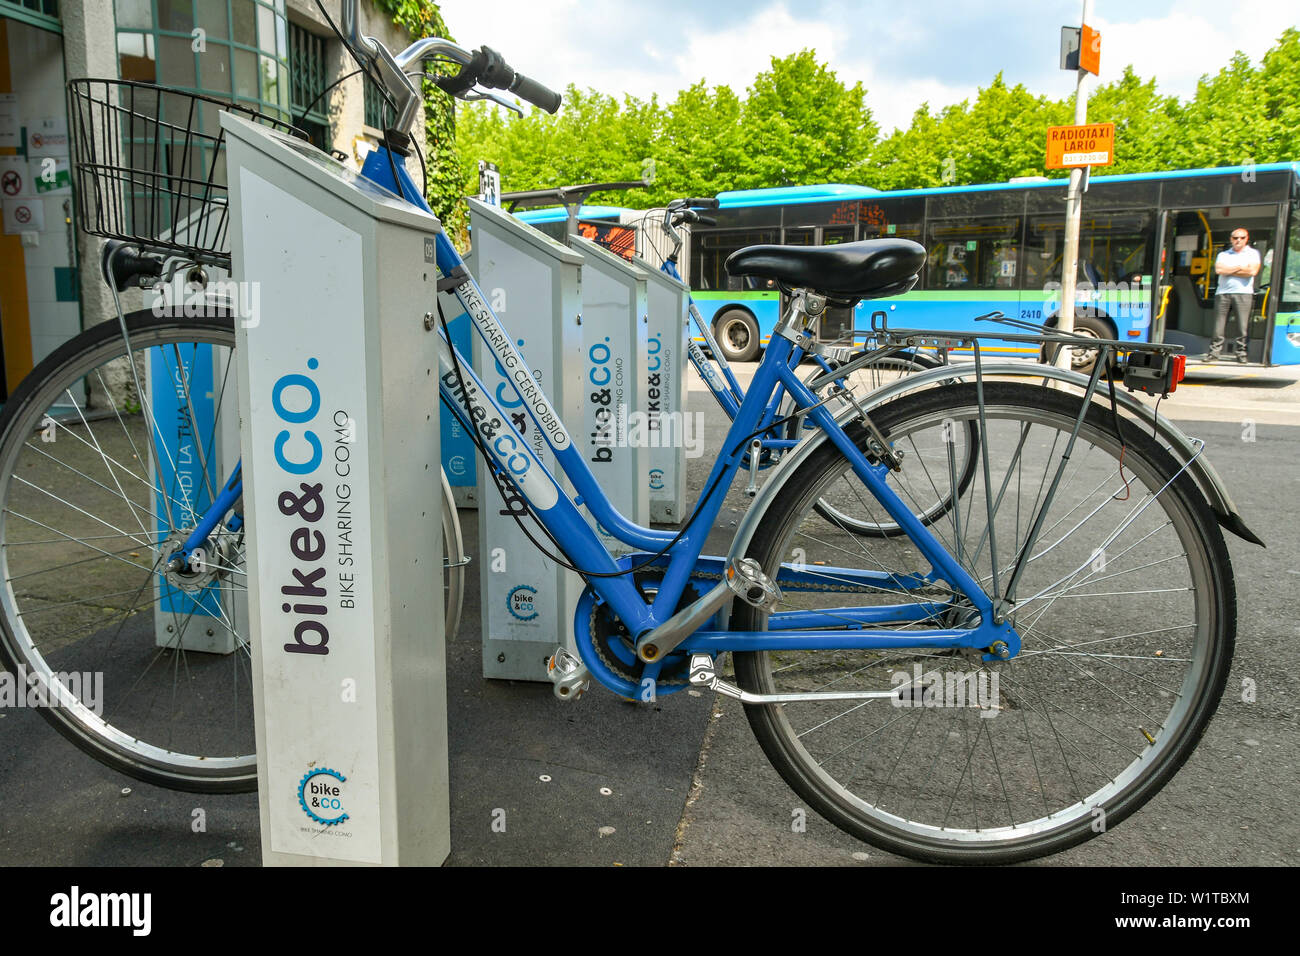 Côme, Italie - Juin 2019 : service de location de vélos garés dans leurs stations d'accueil. Les vélos sont une partie de la Moto & Co Location de vélo scheme à Côme, Le Lac de Côme. Banque D'Images